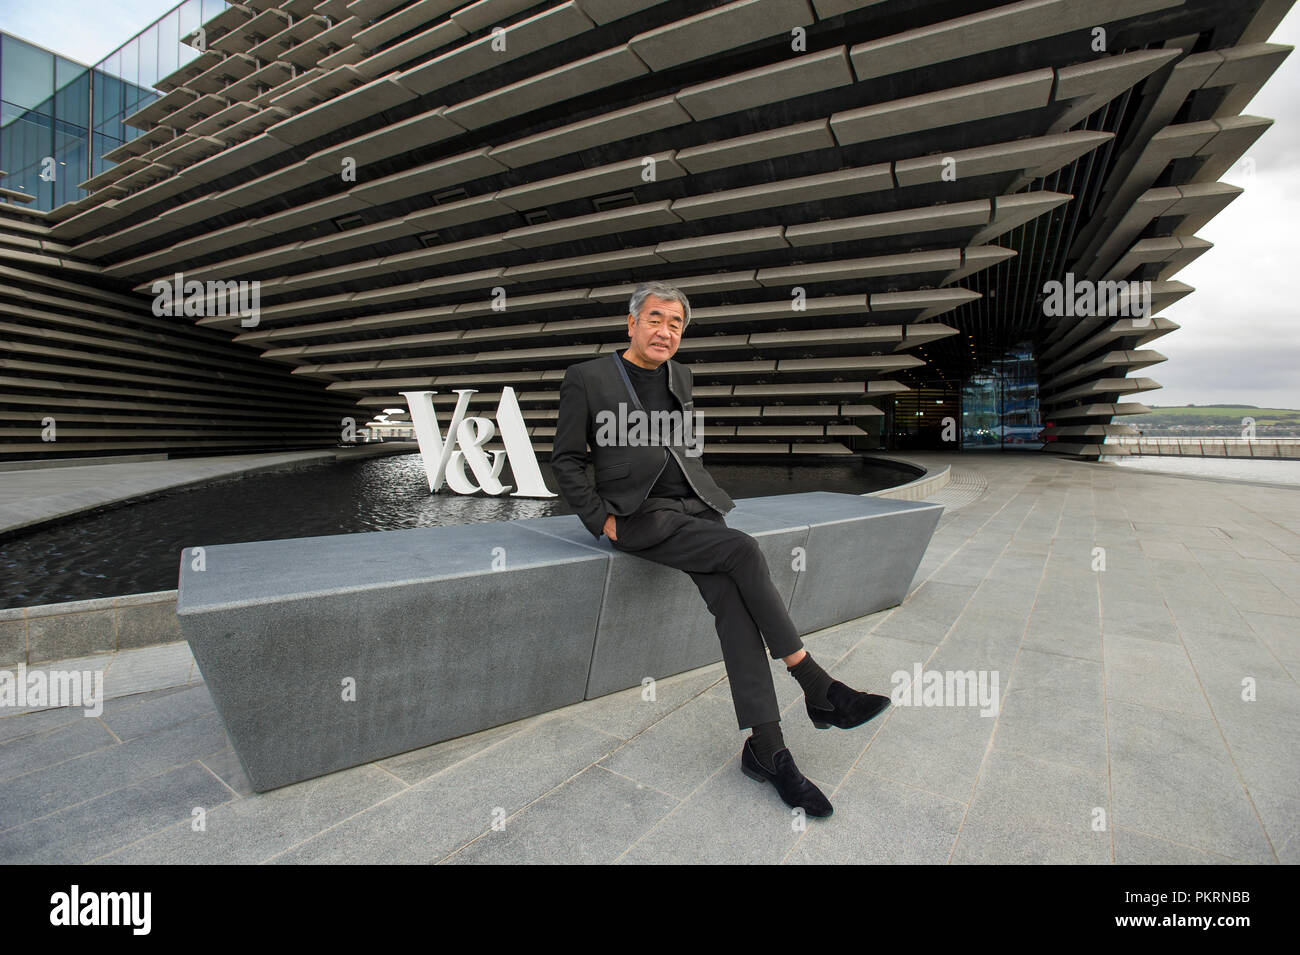 L'architecte japonais Kengo Kuma illustré à l'extérieur de la conception de V & A Museum, Dundee, Ecosse. Banque D'Images